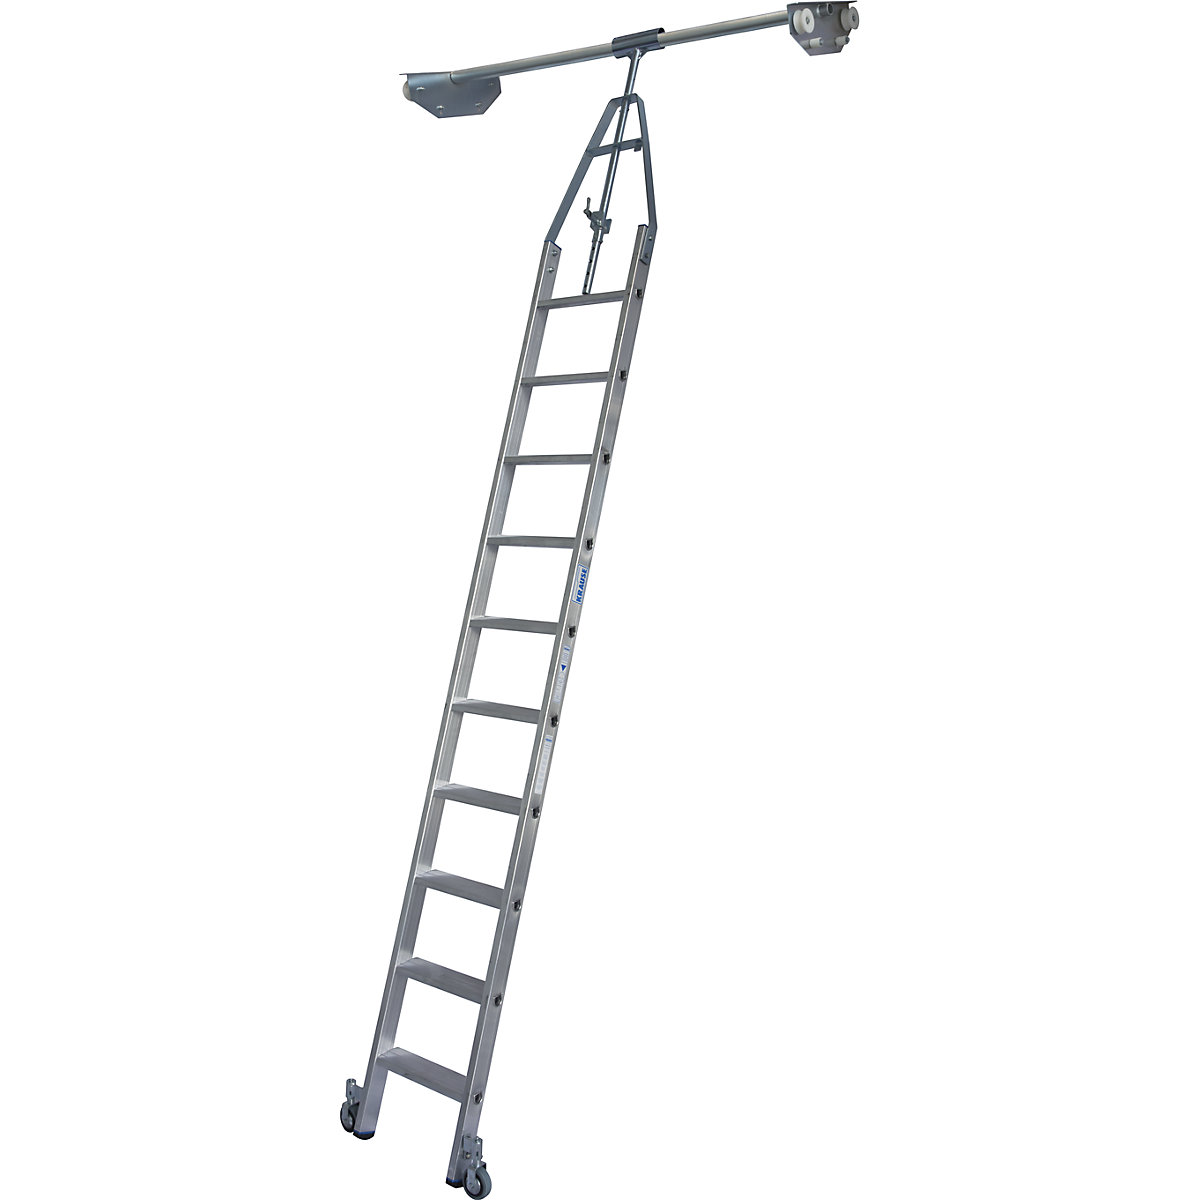 Ljestve za regal sa stepenicama – KRAUSE, dvostruki regal s nadglavnim kotačima za sustav vodilica od okruglih cijevi, 10 stepenica